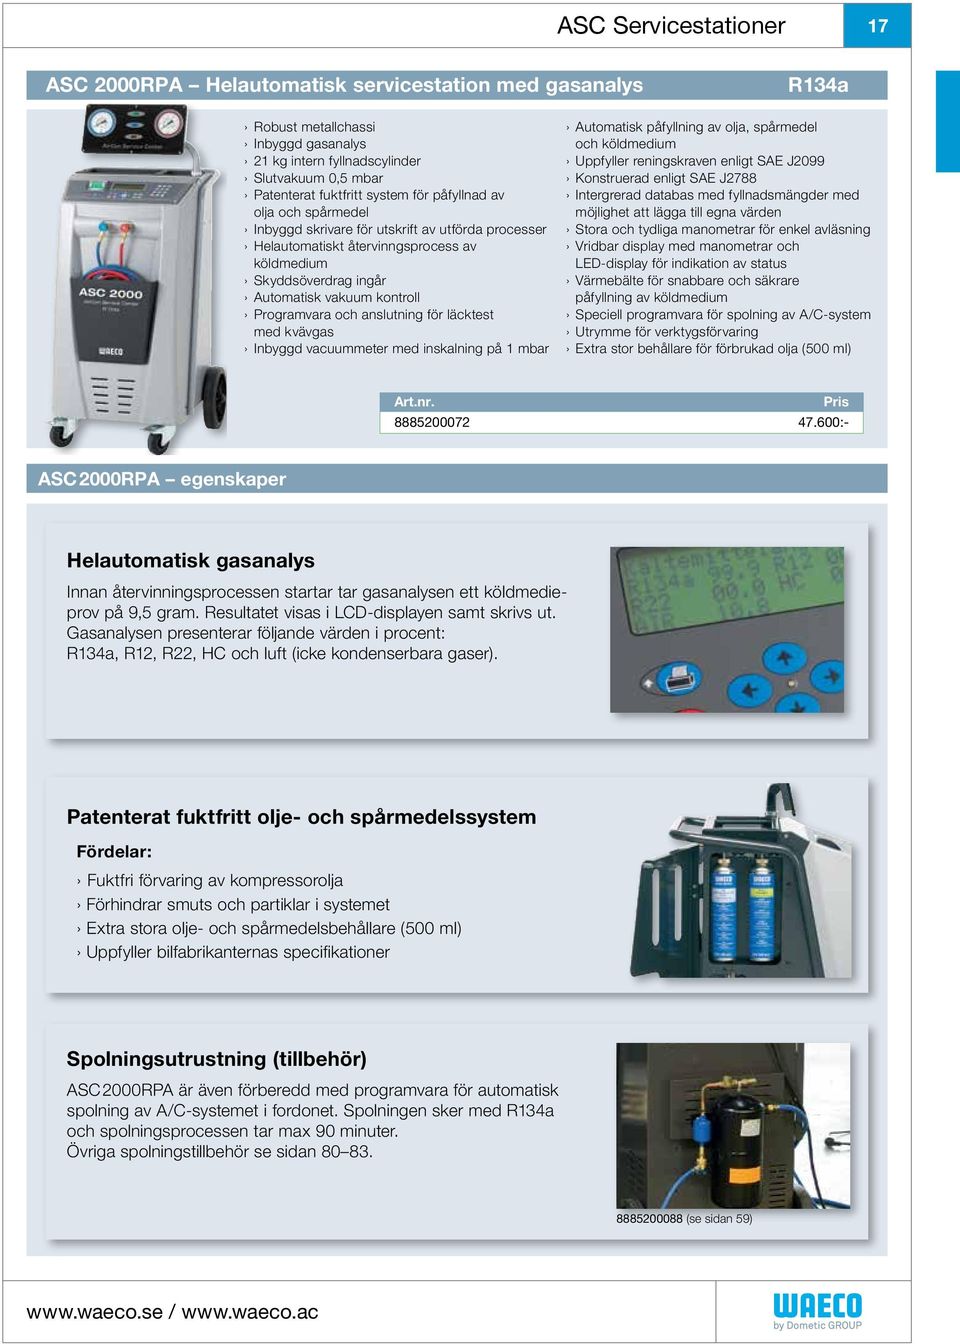 Programvara och anslutning för läcktest med kvävgas Inbyggd vacuummeter med inskalning på 1 mbar Automatisk påfyllning av olja, spårmedel och köldmedium Uppfyller reningskraven enligt SAE J2099